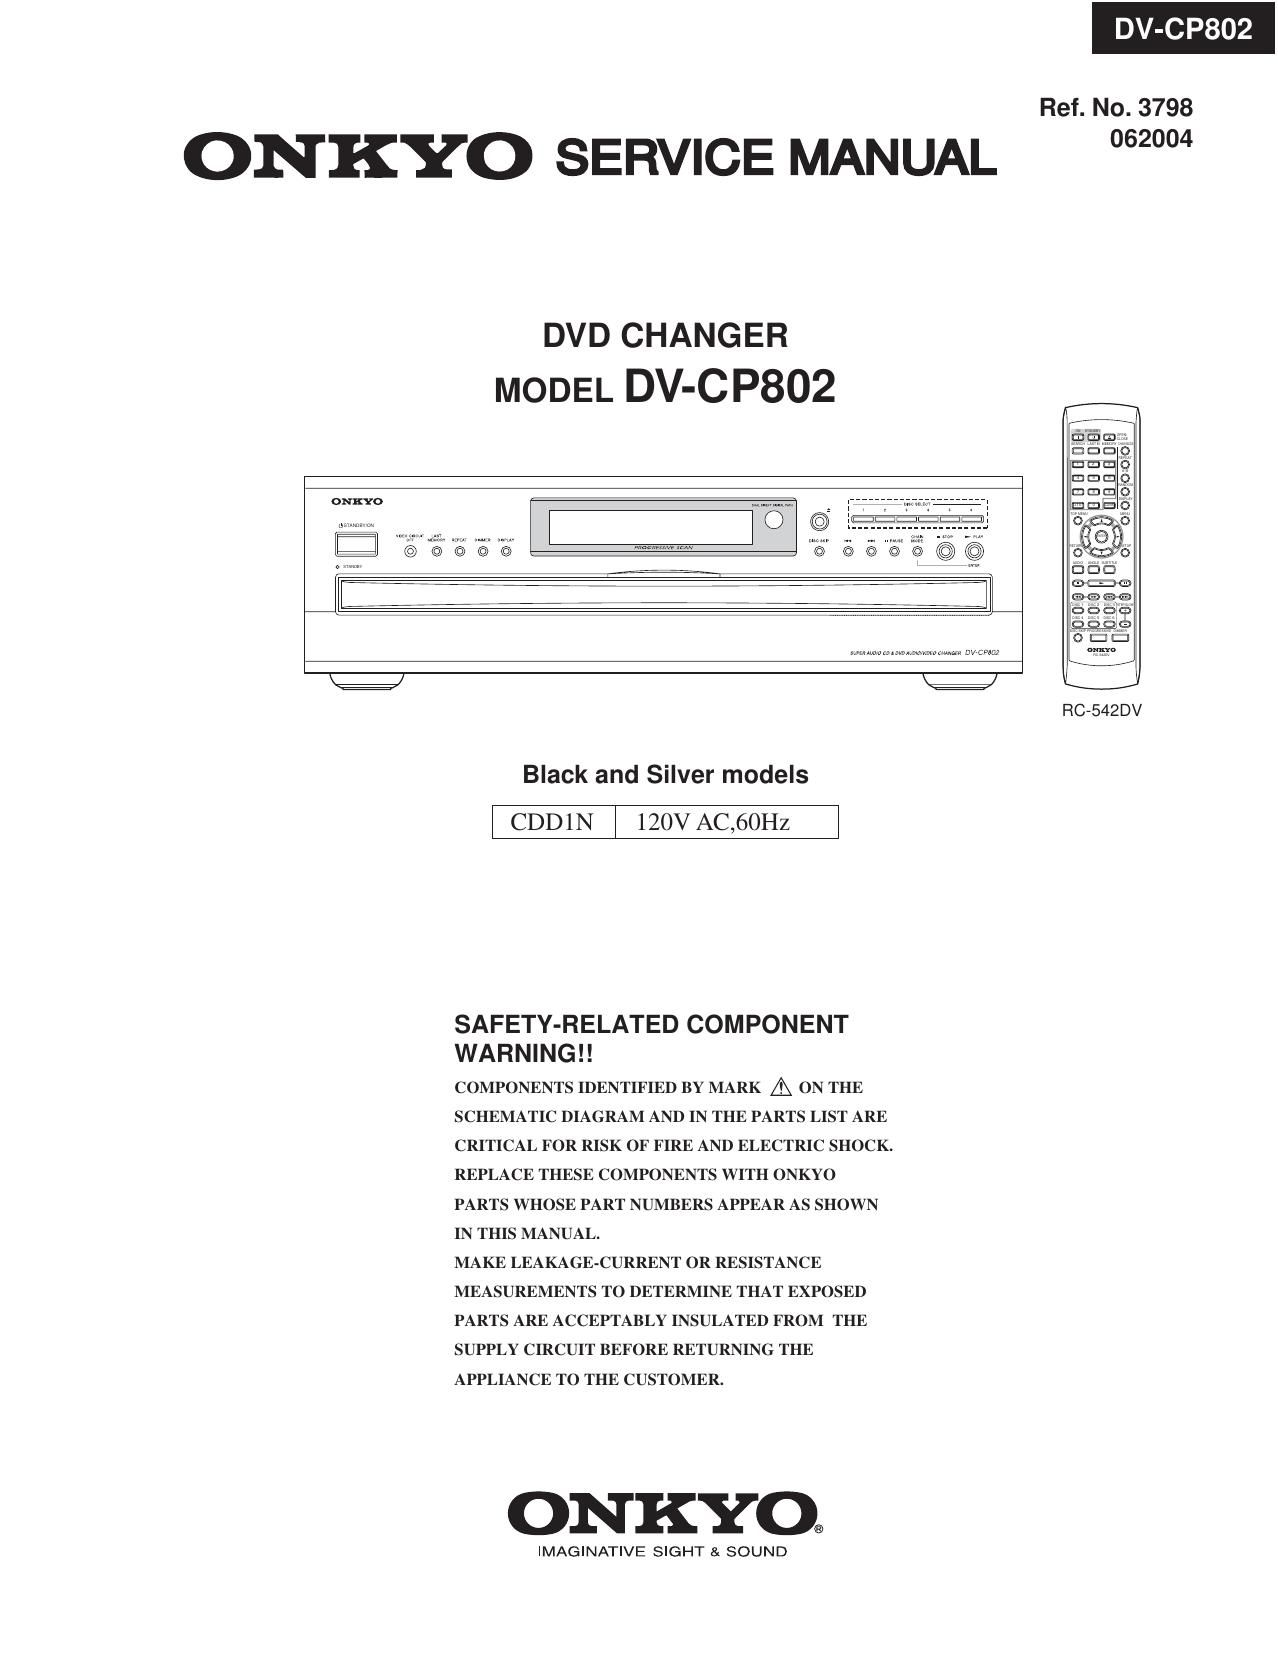 Onkyo DVCP 802 Service Manual